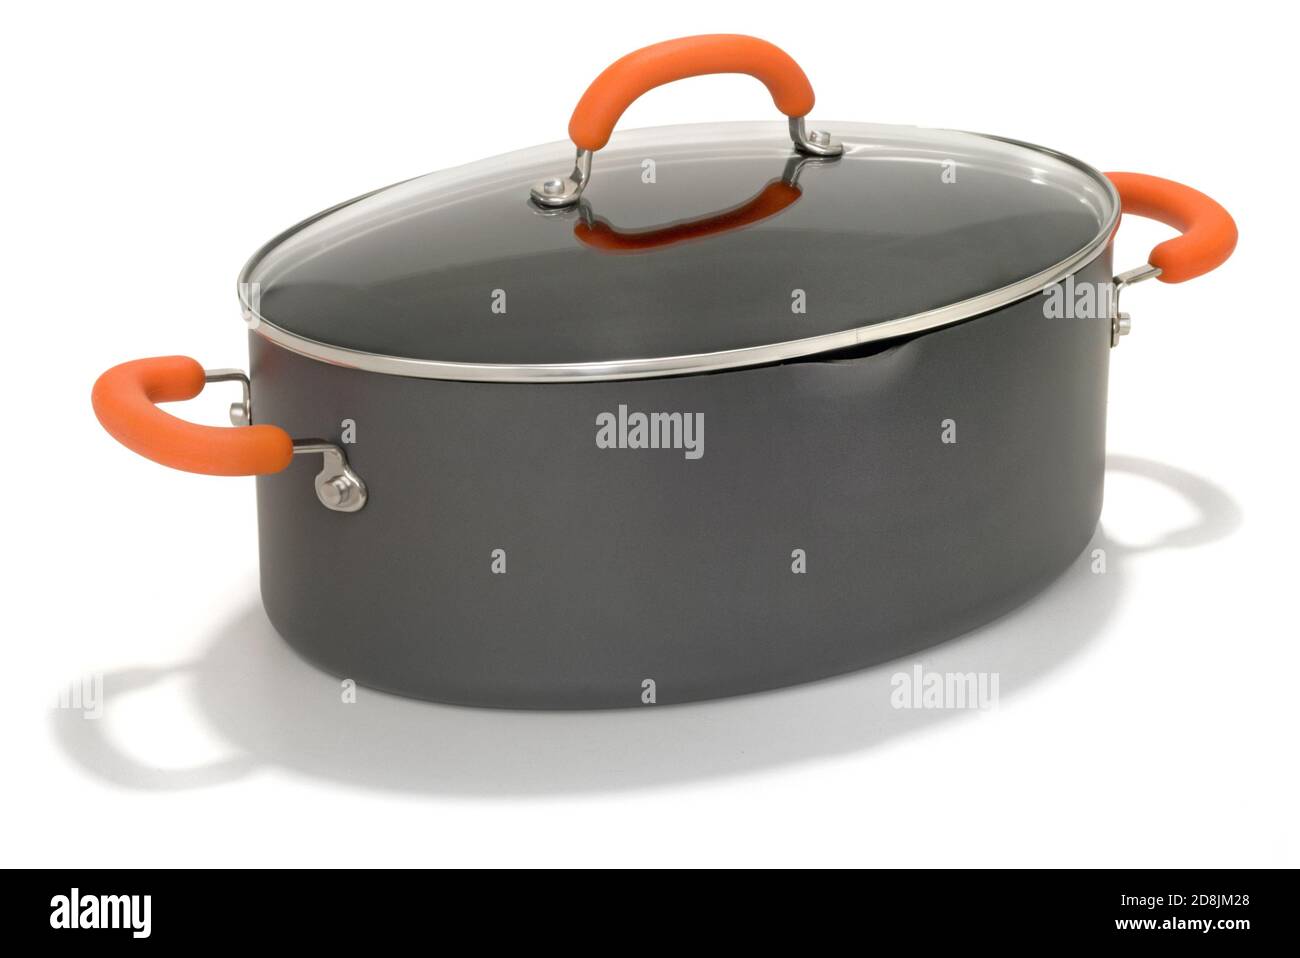 https://c8.alamy.com/comp/2D8JM28/oval-shaped-non-stick-pasta-pot-with-orange-handles-photographed-on-a-white-background-2D8JM28.jpg